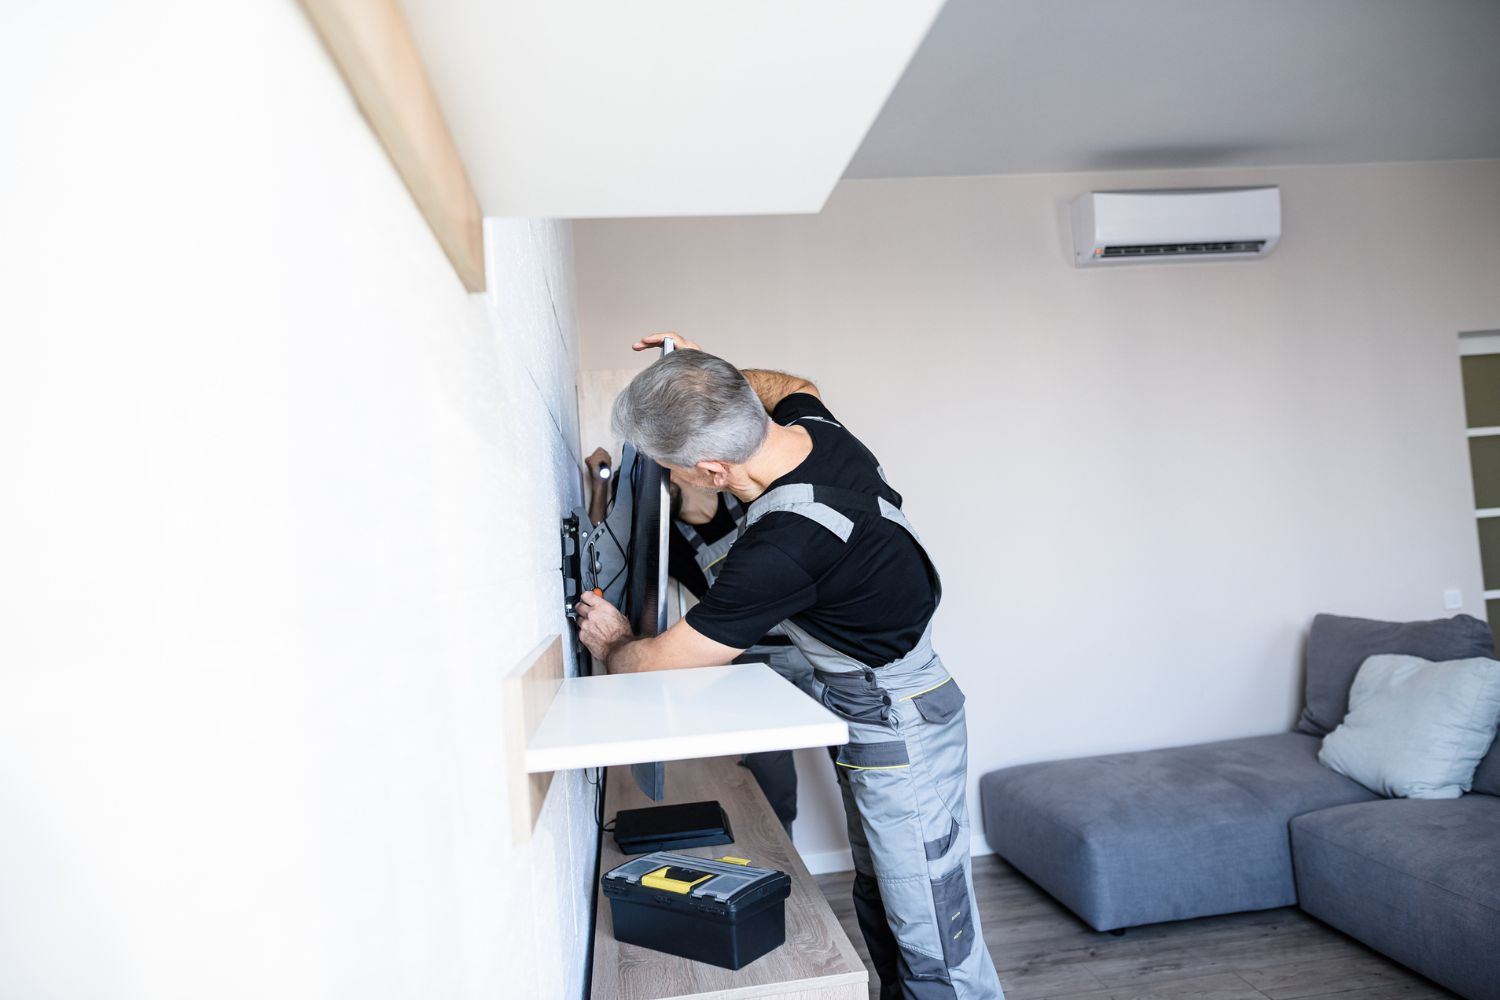 A handyman installs a TV mount. 